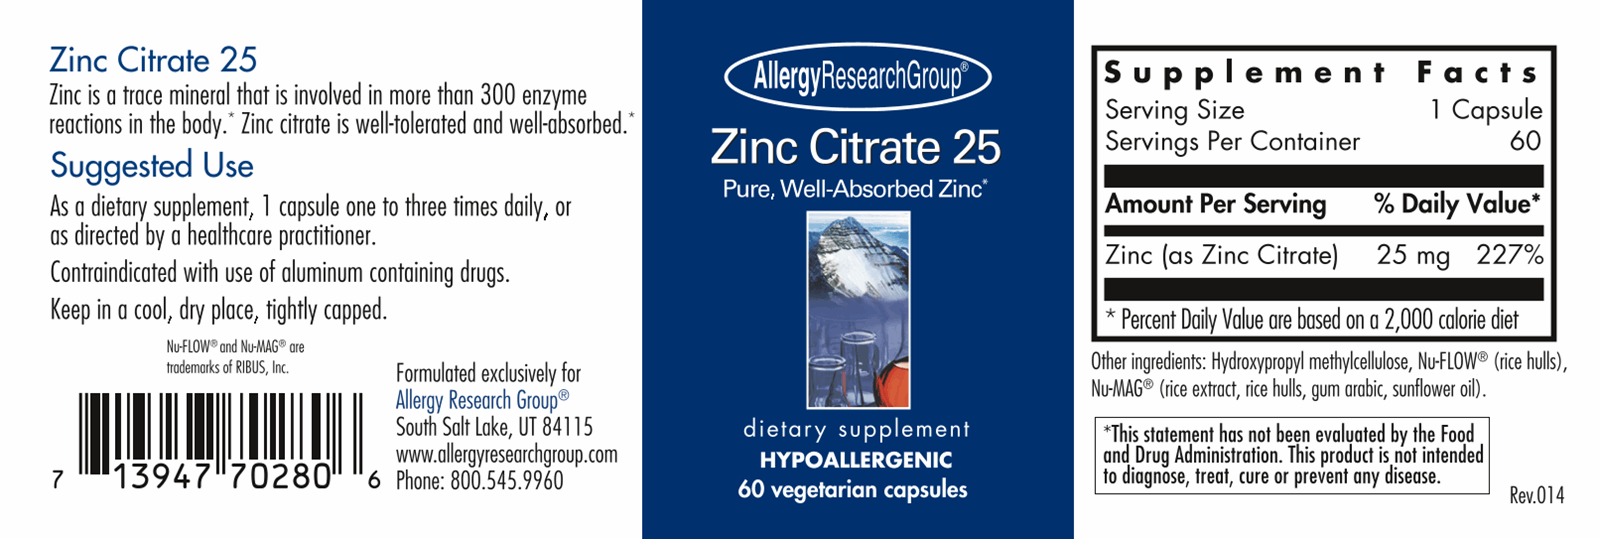 Zinc Citrate 25 